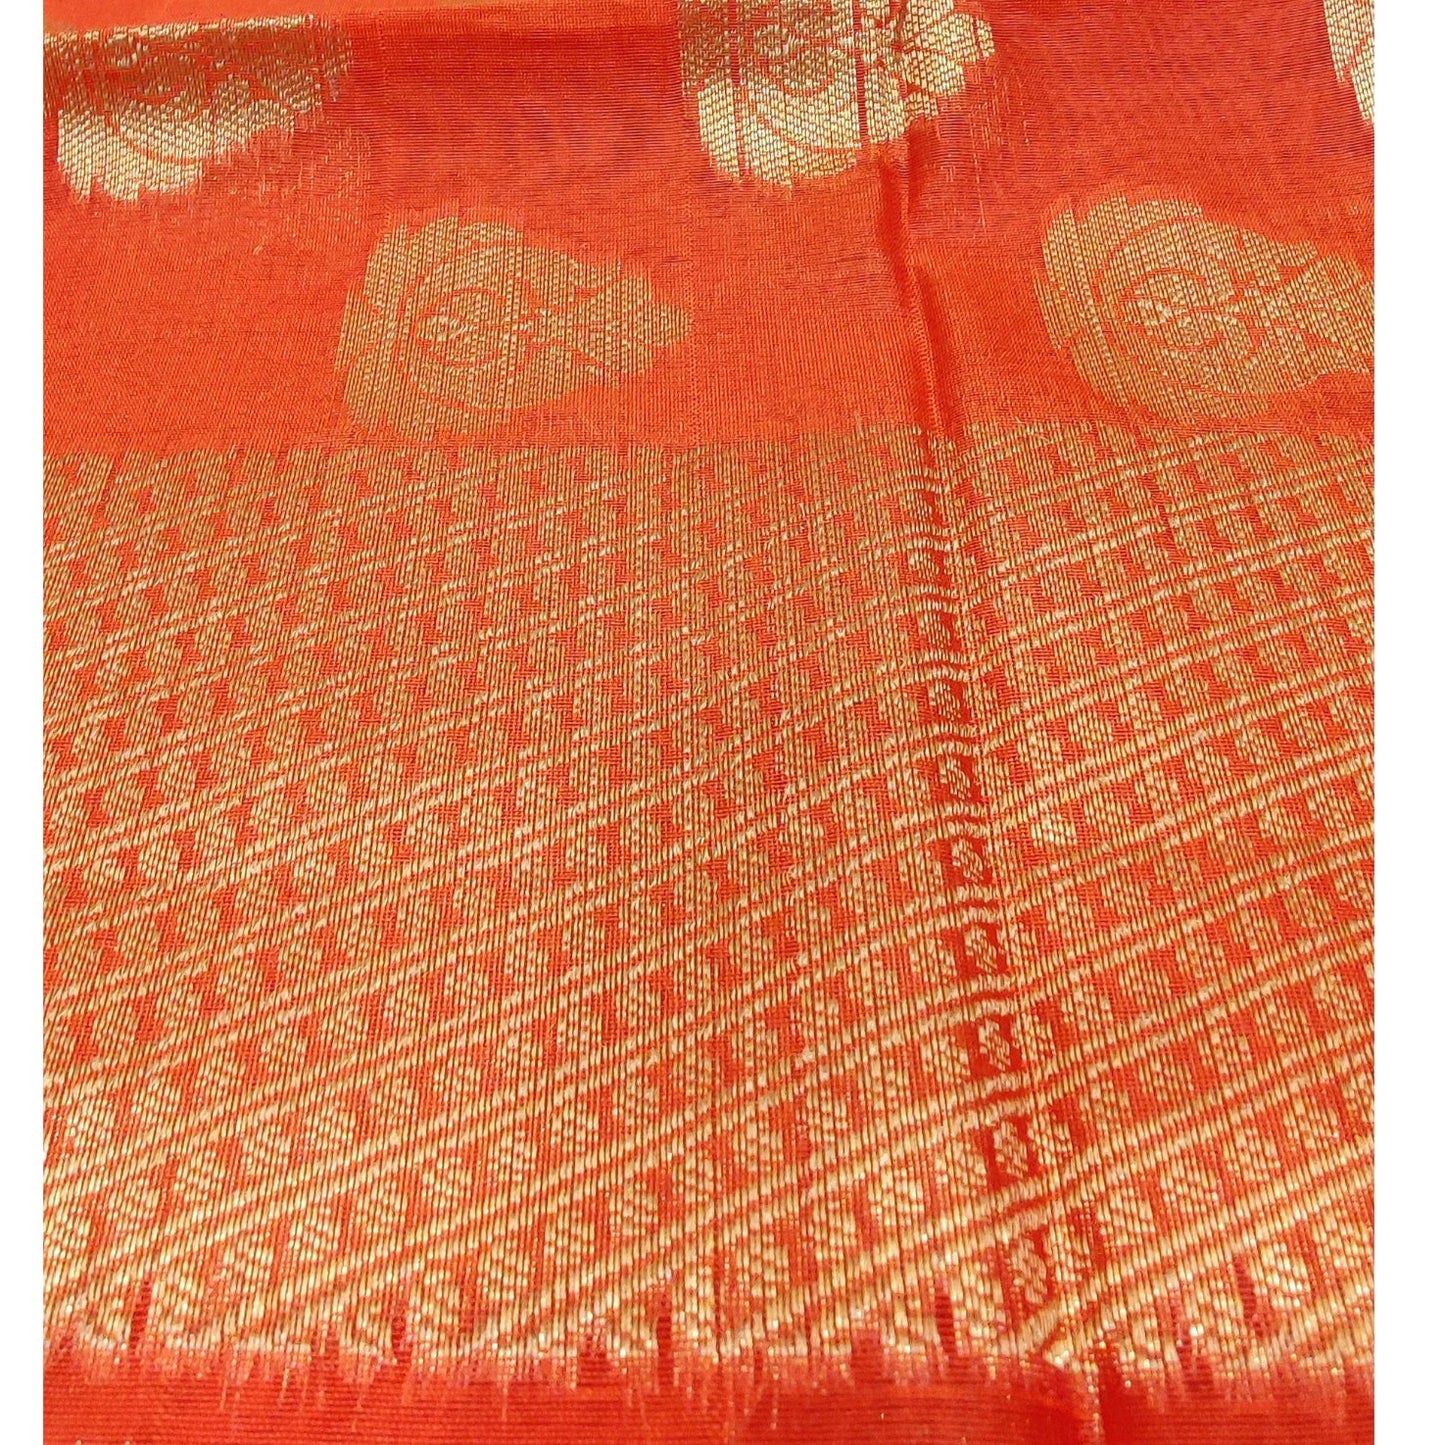 Banarasi Cotton Silk With Butti Pattern Jaal Dupatta- Orange